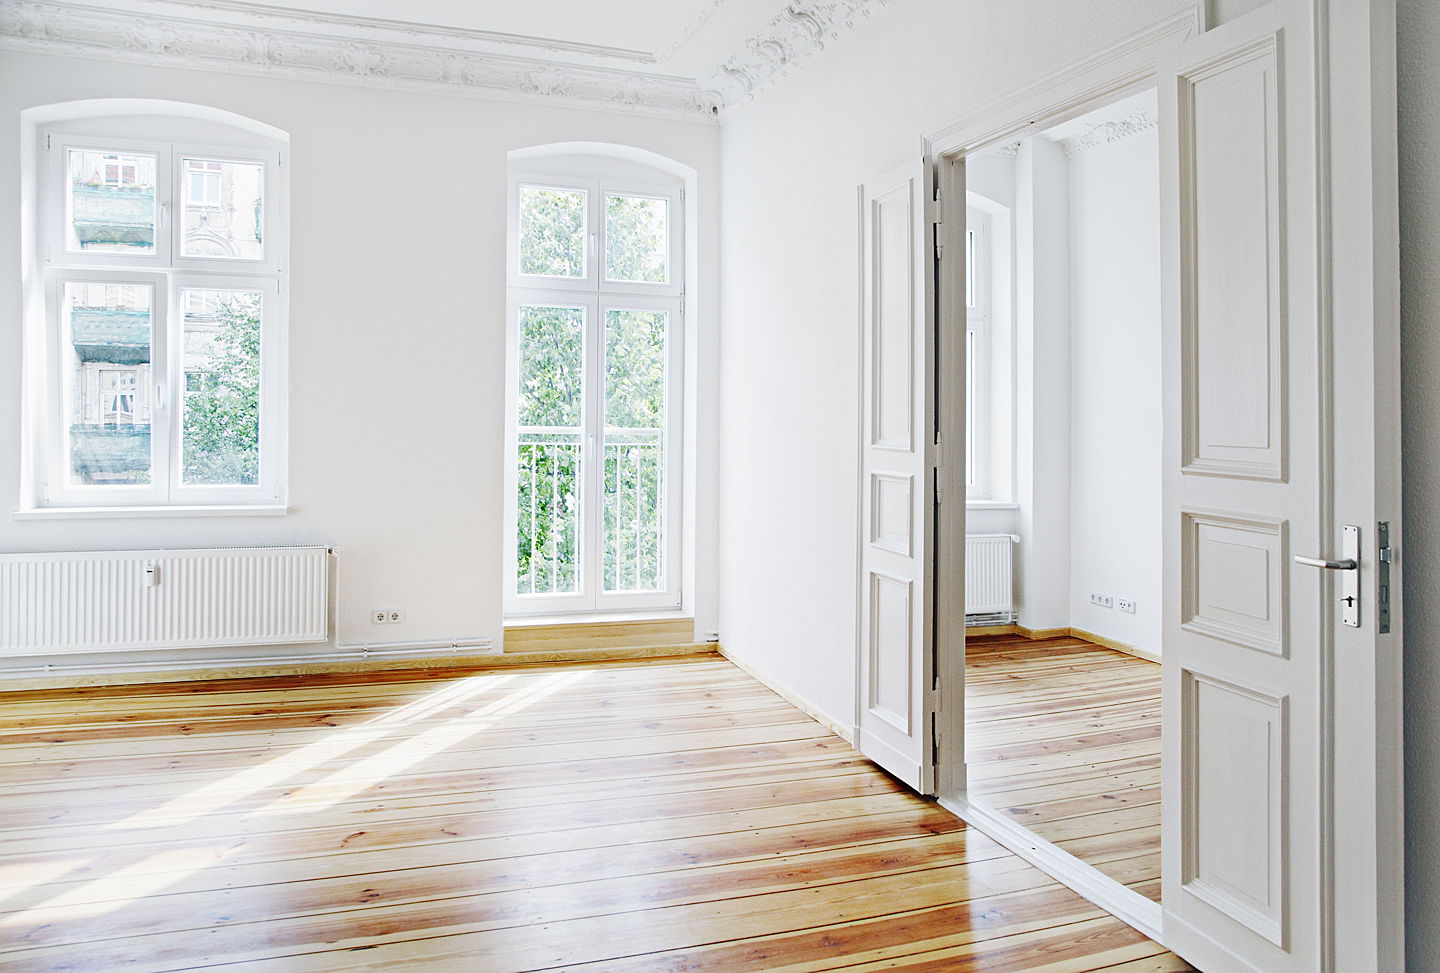  Hamburg
- Immobilienbesitzer, die ihre Wohnung selbst bewohnen oder vermieten, sollten sich umsichtig um die richtigen Versicherungen kümmern